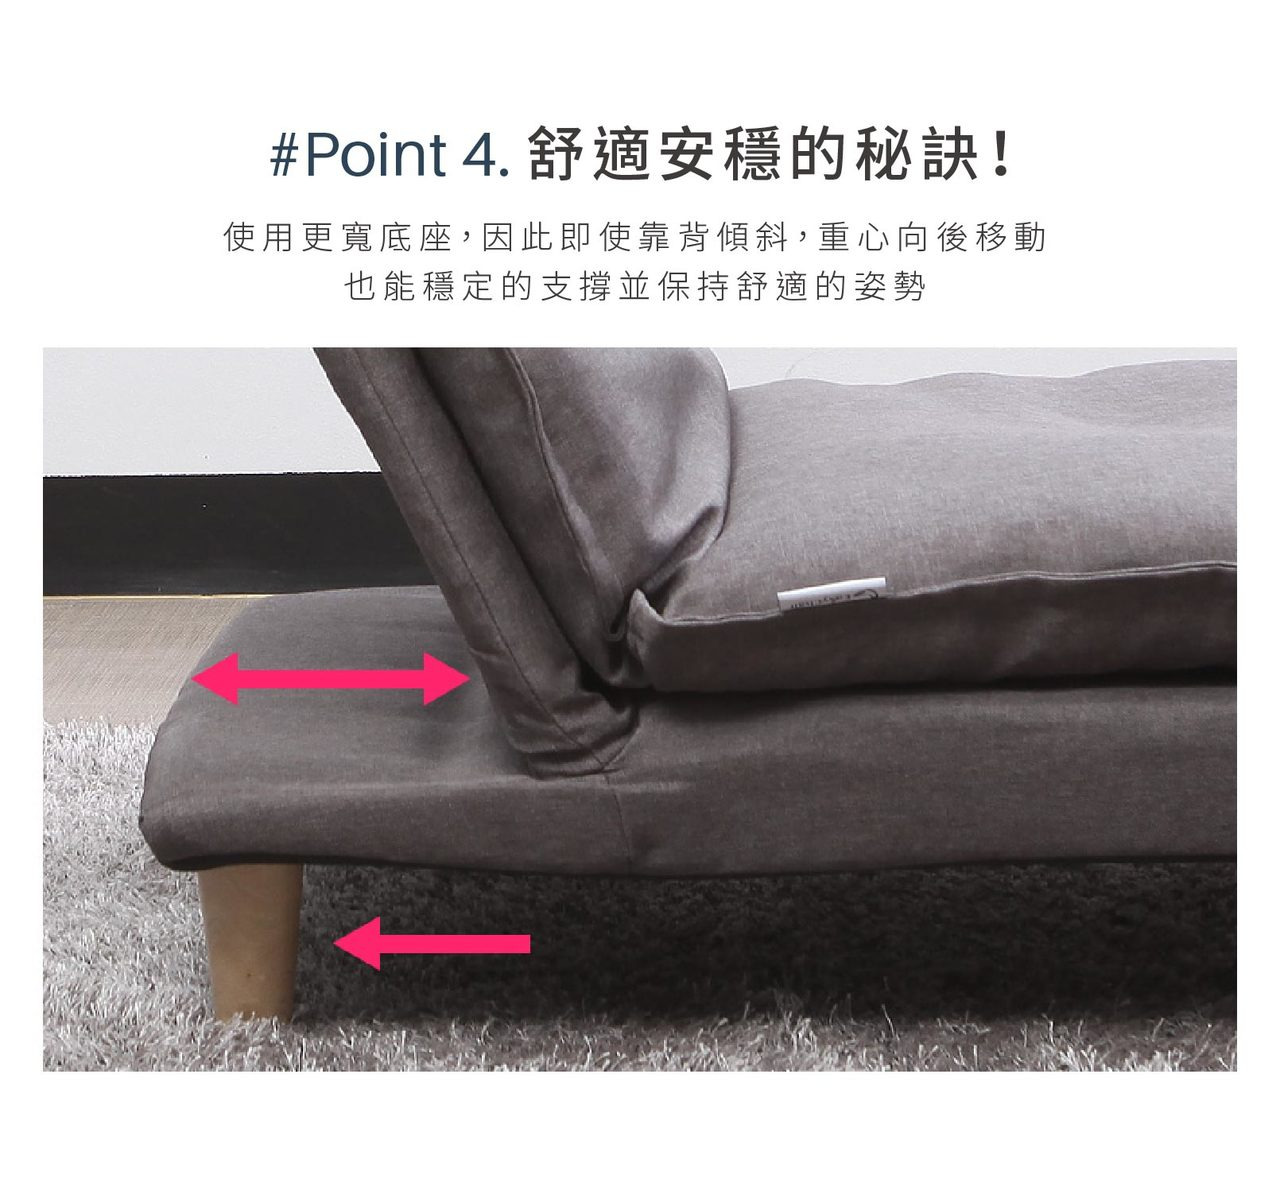 加寬的躺椅底座，使用時更加穩固